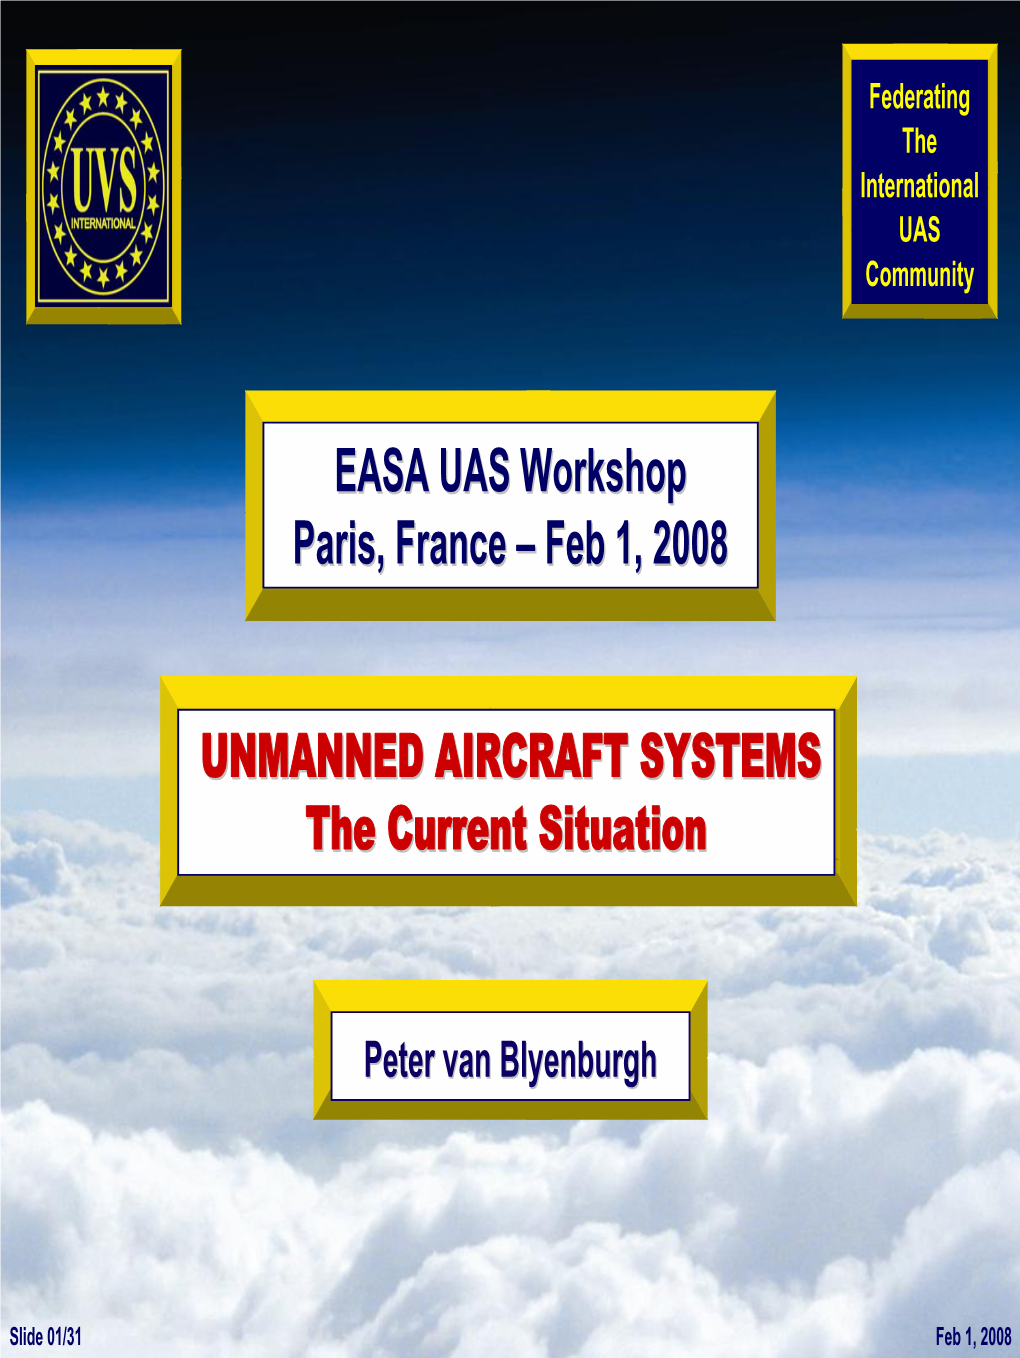 UAVS, UK - EUROCAE, France - UVS Canada - UVS Norway - European Institute, USA - UVS N